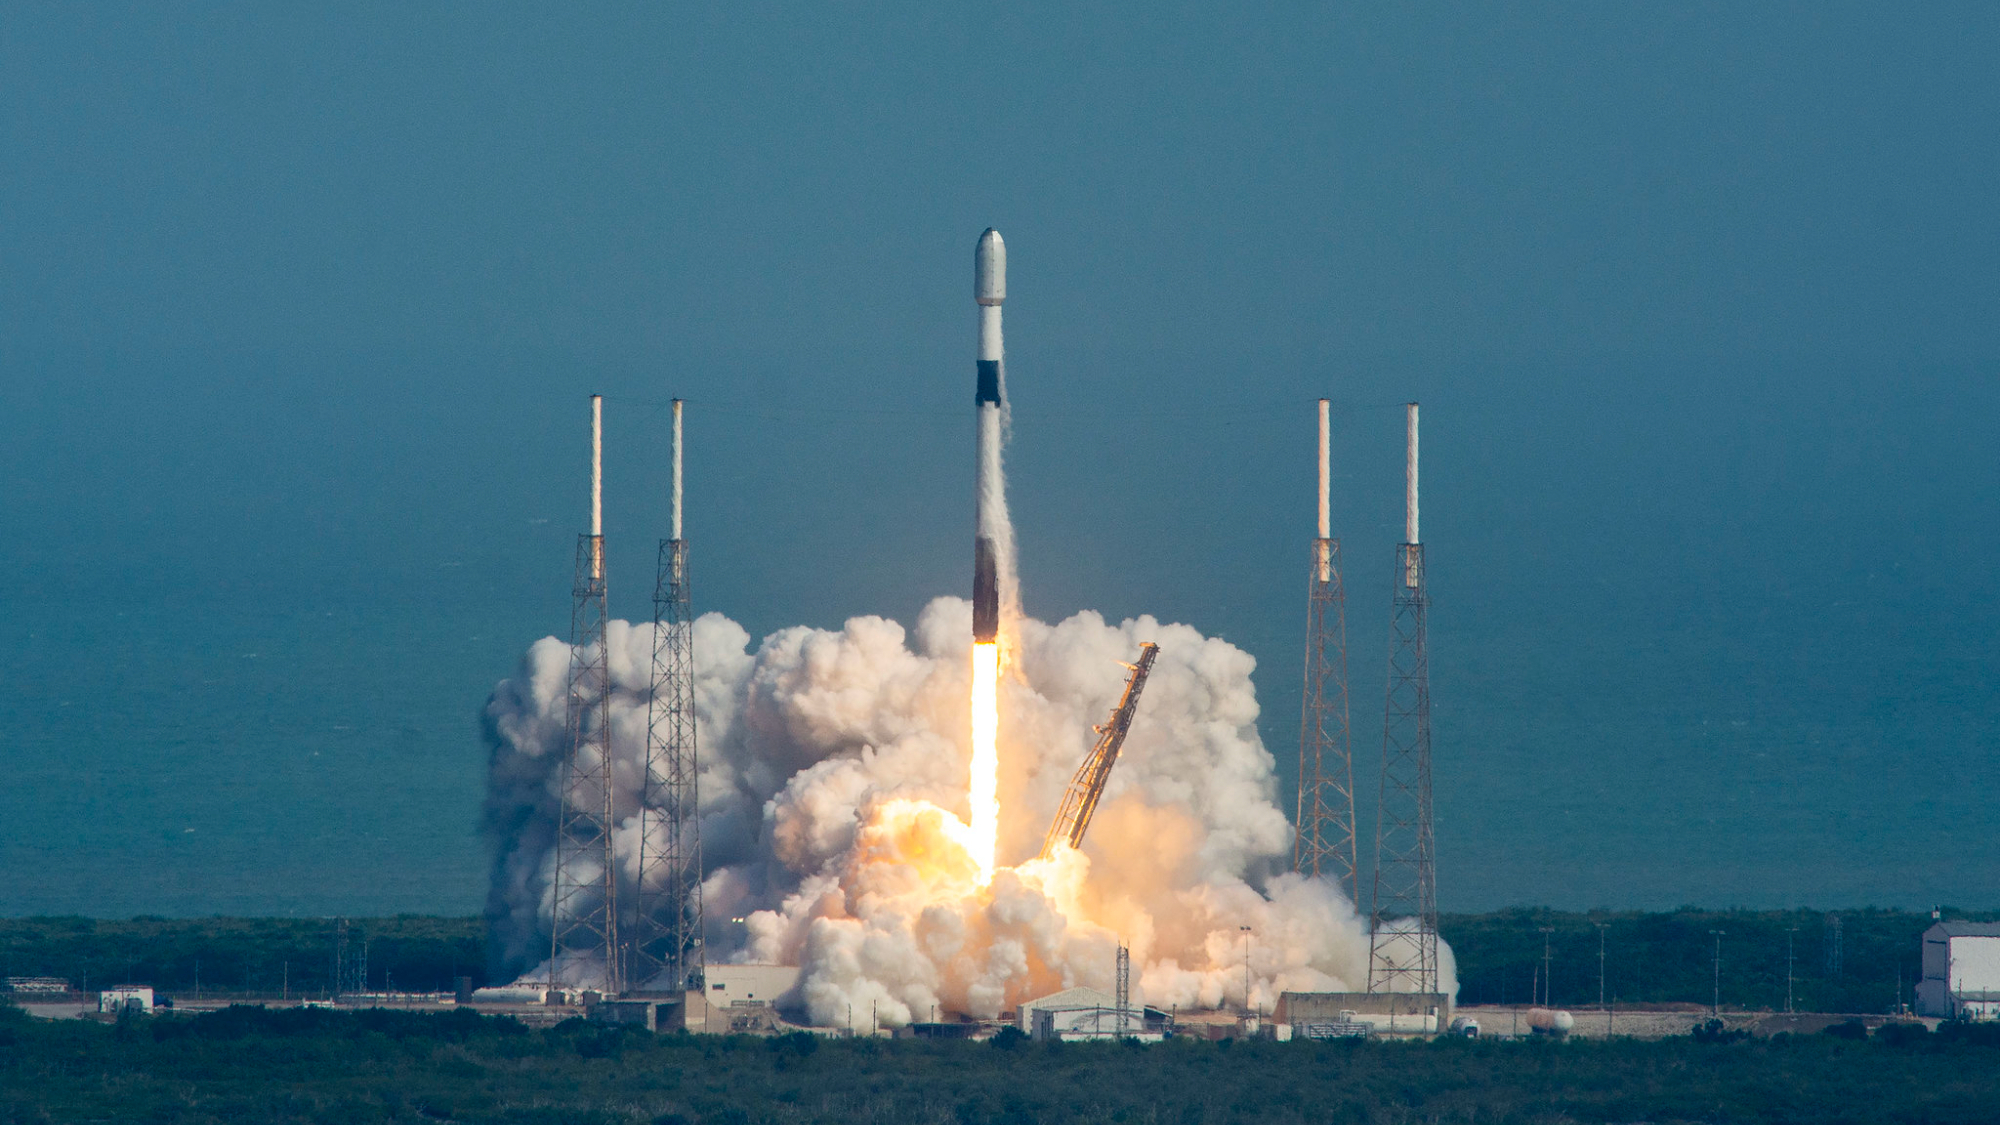 roket spacex falcon 9 hitam dan putih diluncurkan ke langit biru.